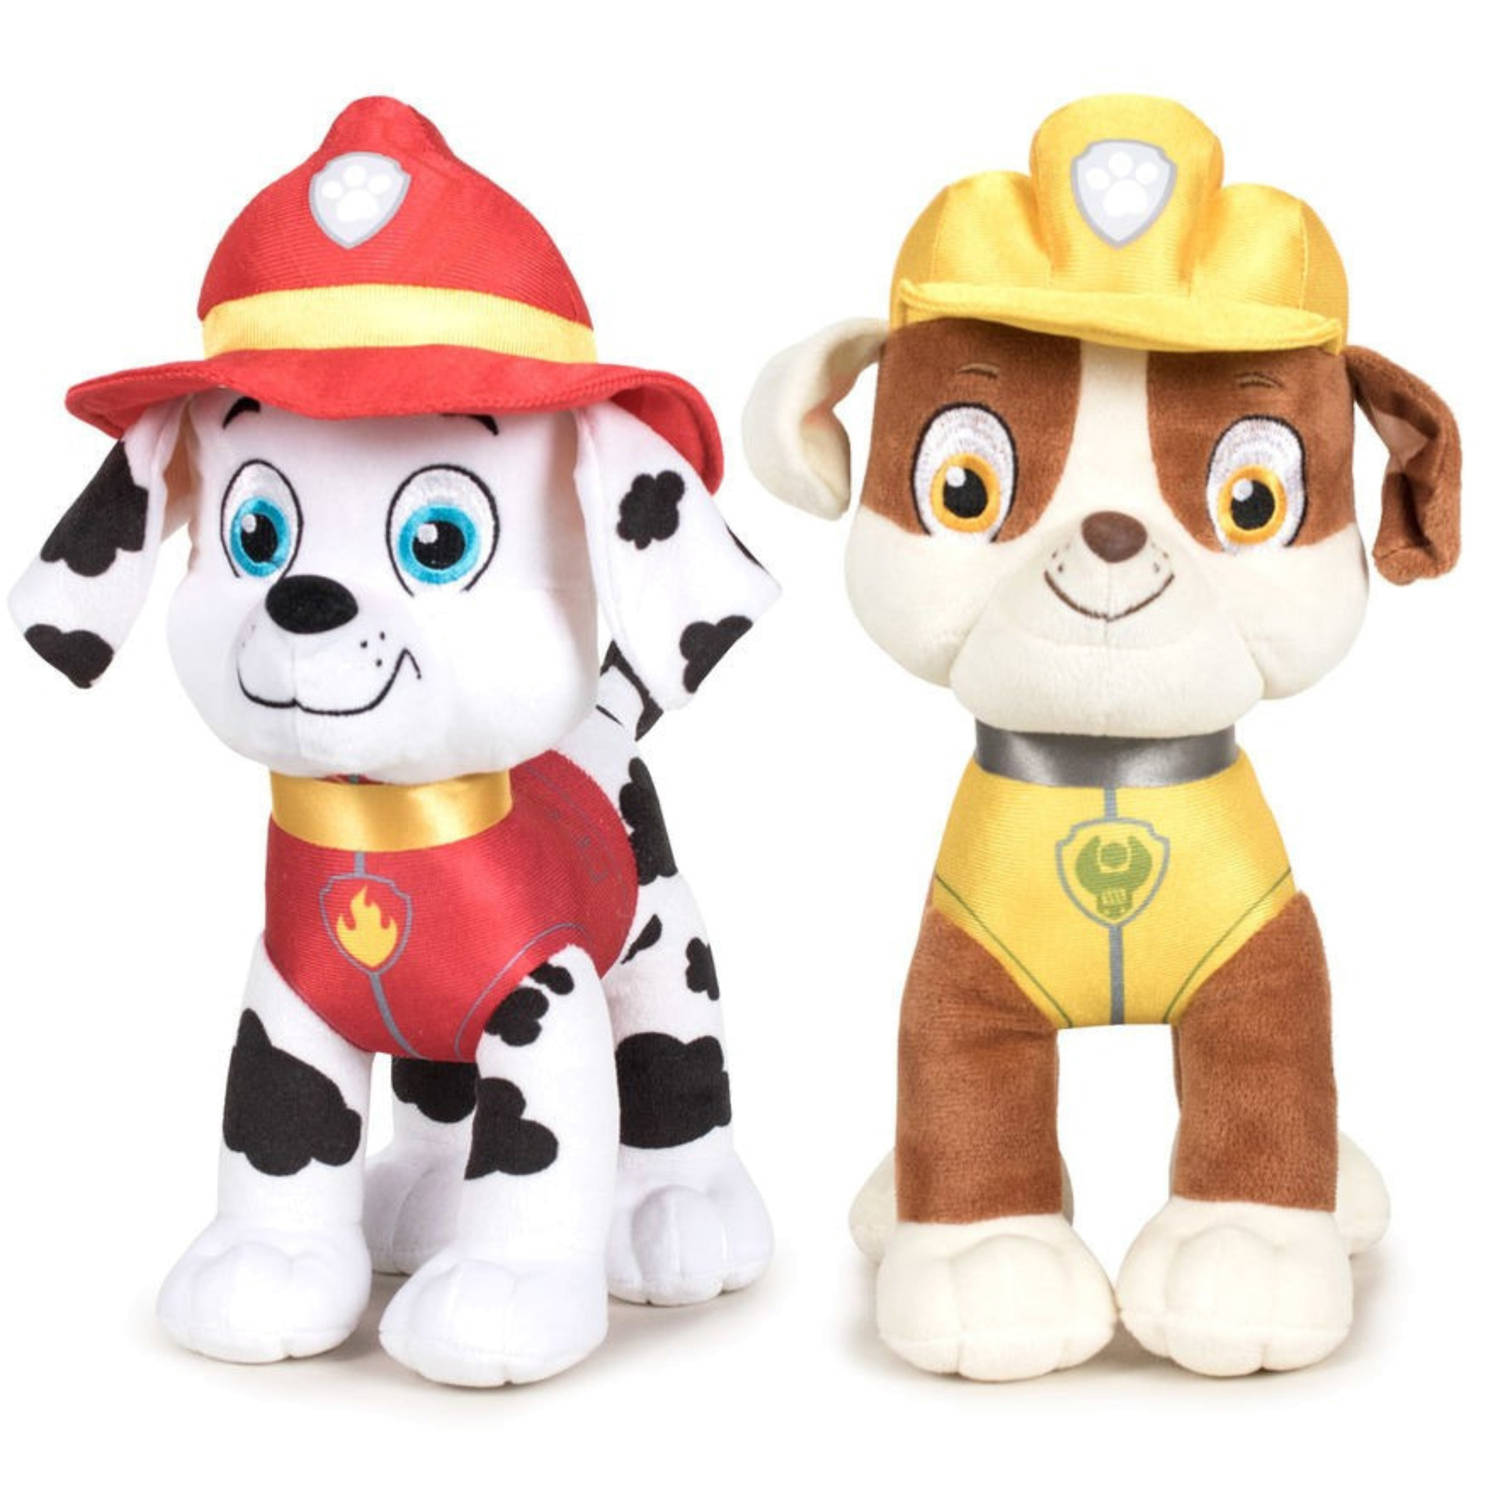 Paw Patrol figuren speelgoed knuffels set van 2x karakters Marshall en Rubble 19 cm Knuffeldier